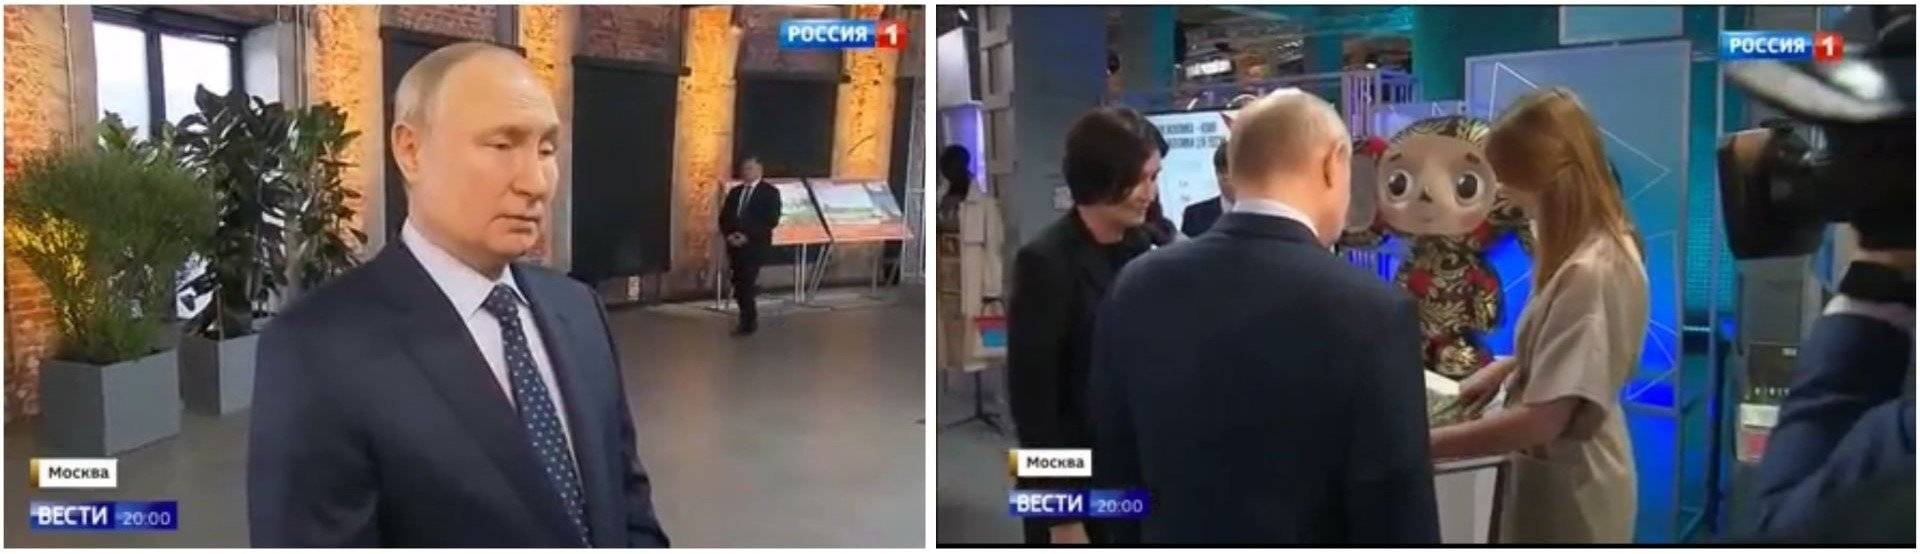 Putin na korytarzu i Putin odwrócony plecami do kamery patrzy na dużego misia